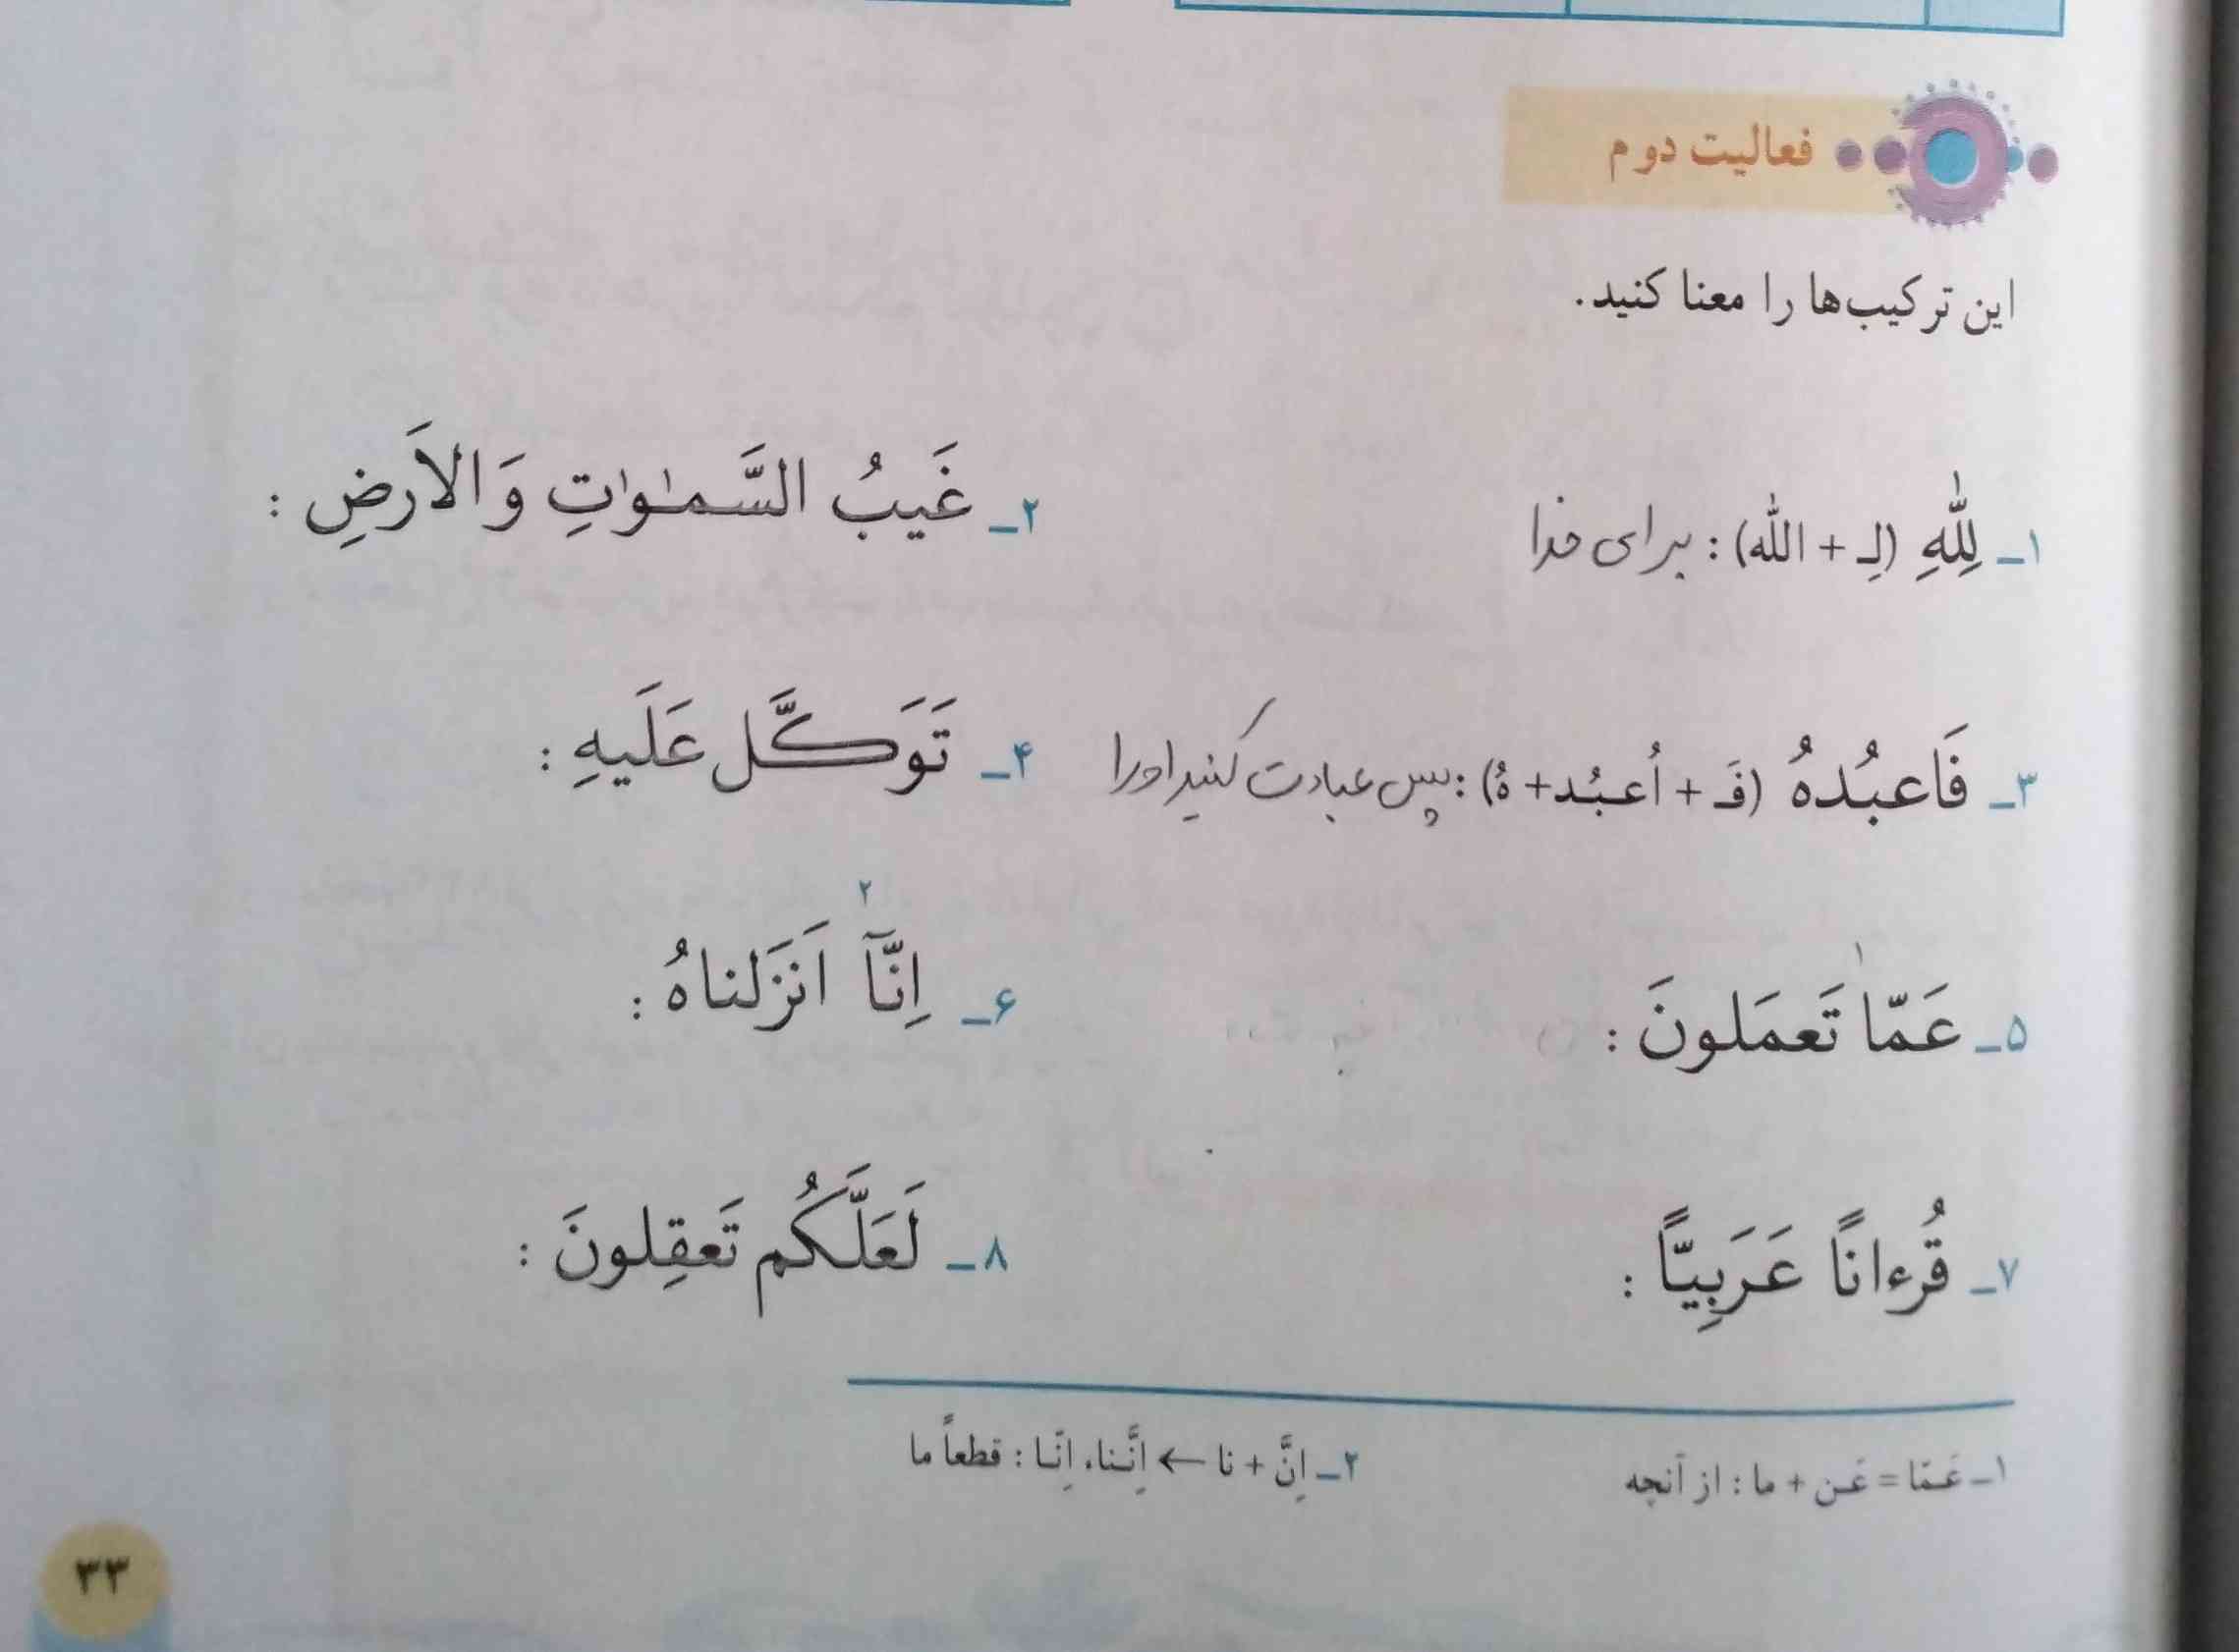 سلام .... جواب فعالیت دوم صفحه ی ۳۳ قرآن 
باید مثل اولی بازش کنیم؟
اگه میشه جواب بدید عجله دارم 